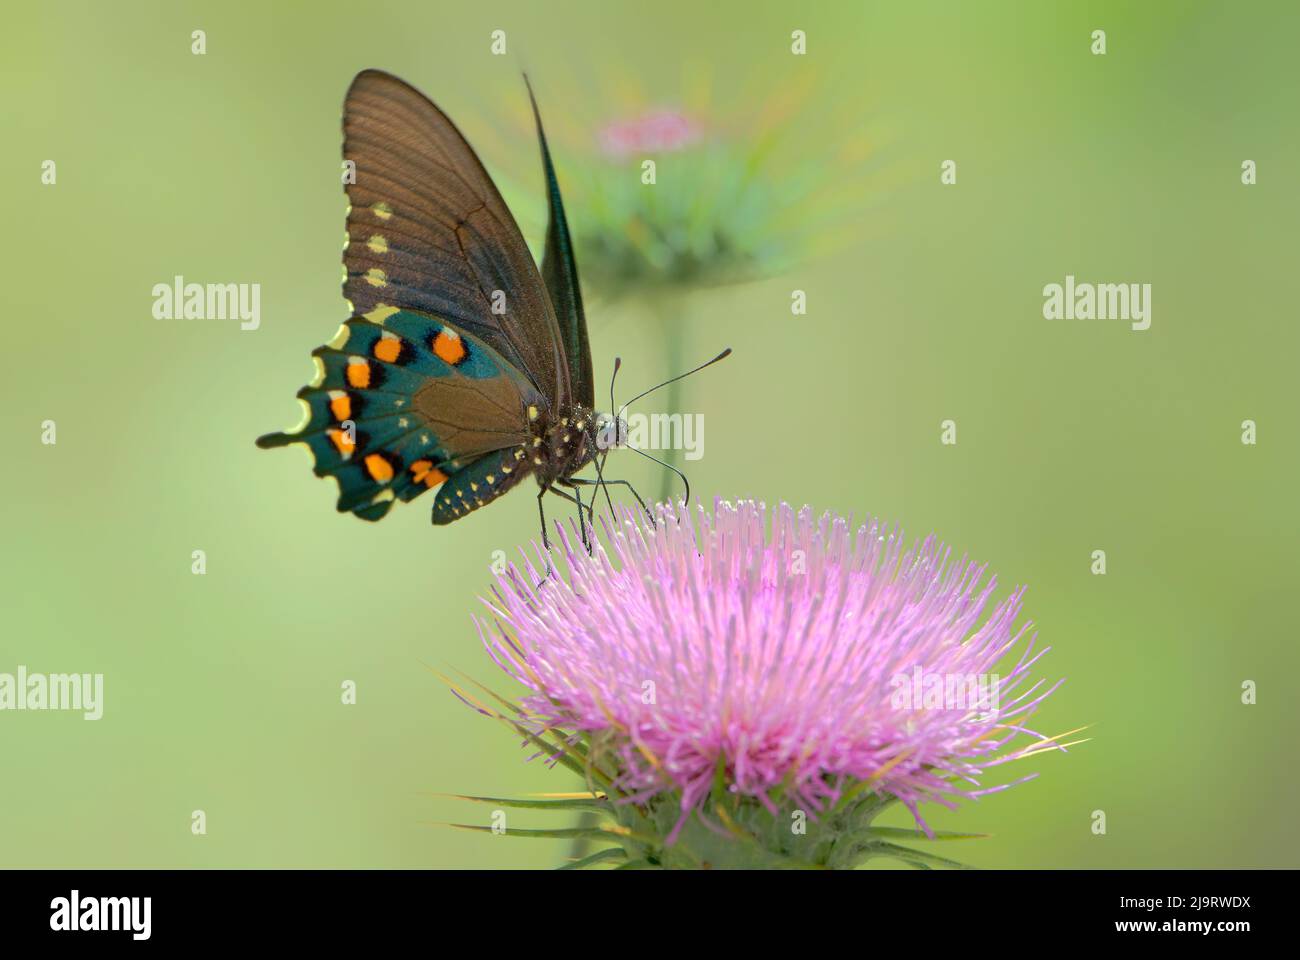 Etats-Unis, Arizona, zone de conservation naturelle de Las Cienegas. Le papillon à queue de Pipevine se nourrit de la fleur de chardon du désert. Banque D'Images